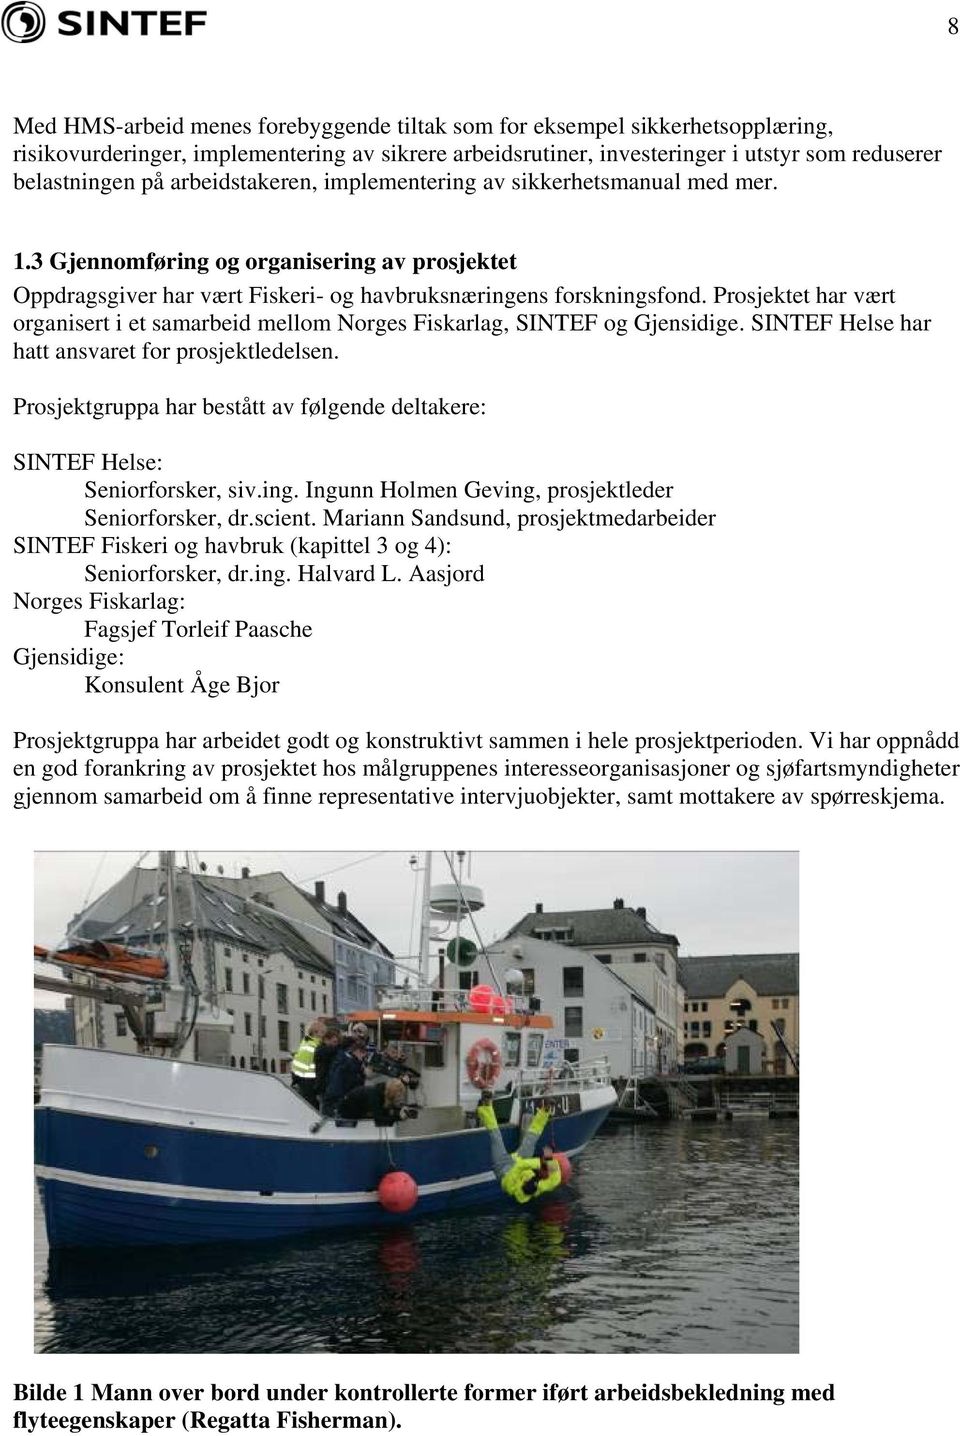 Prosjektet har vært organisert i et samarbeid mellom Norges Fiskarlag, SINTEF og Gjensidige. SINTEF Helse har hatt ansvaret for prosjektledelsen.